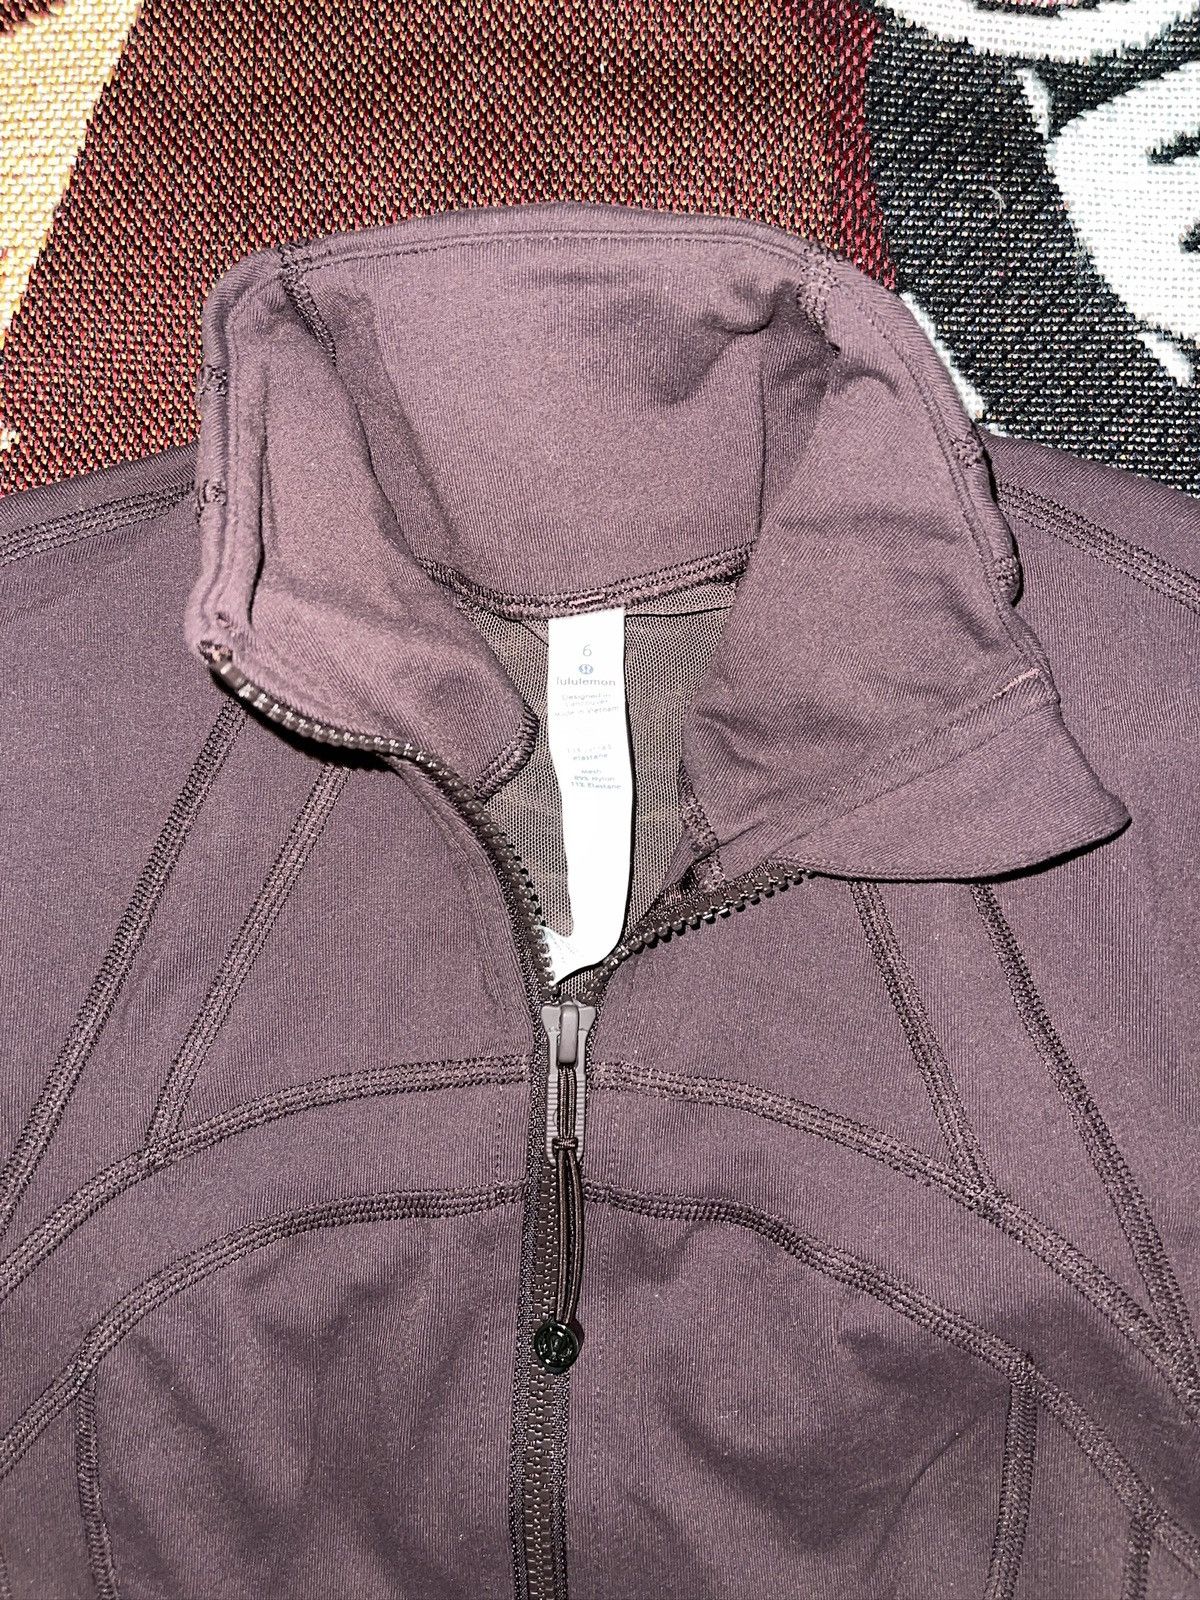 Lululemon Lululemon Define Luon Jacket Arctic Plum; Size 6 | Grailed